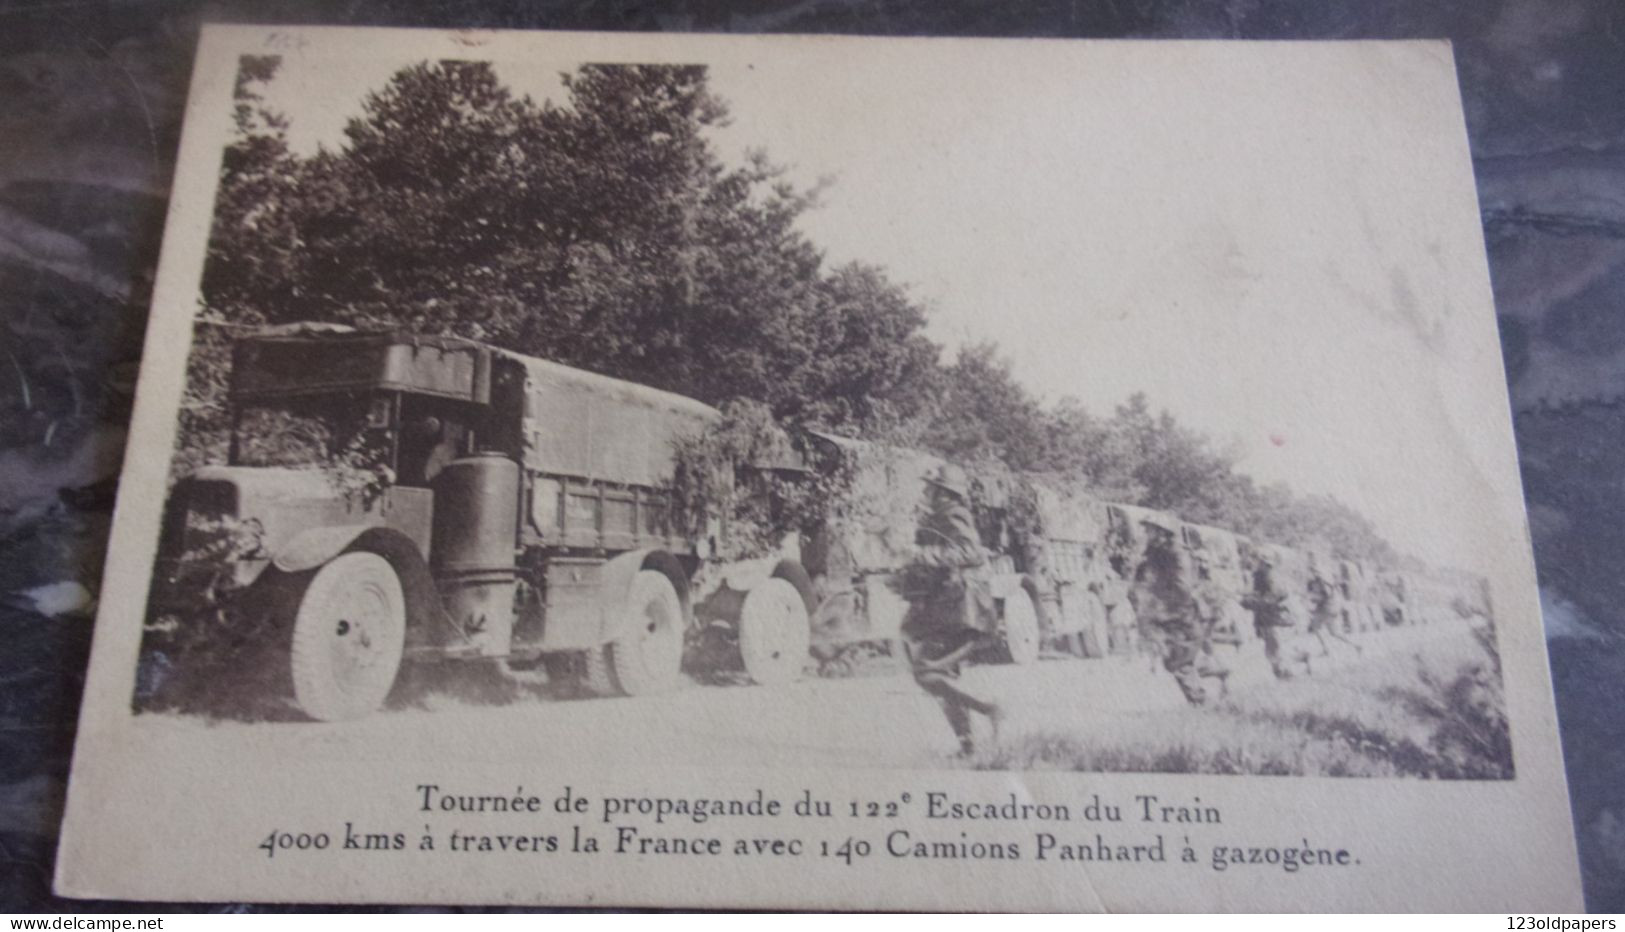 1937 TOURNEE PROPAGANDE DU 122 EME ESCADRON DU TRAIN 140 CAMIONS PANHARD A GAZOGENE 4000KMS A TRAVERS FRANCE - Camions & Poids Lourds